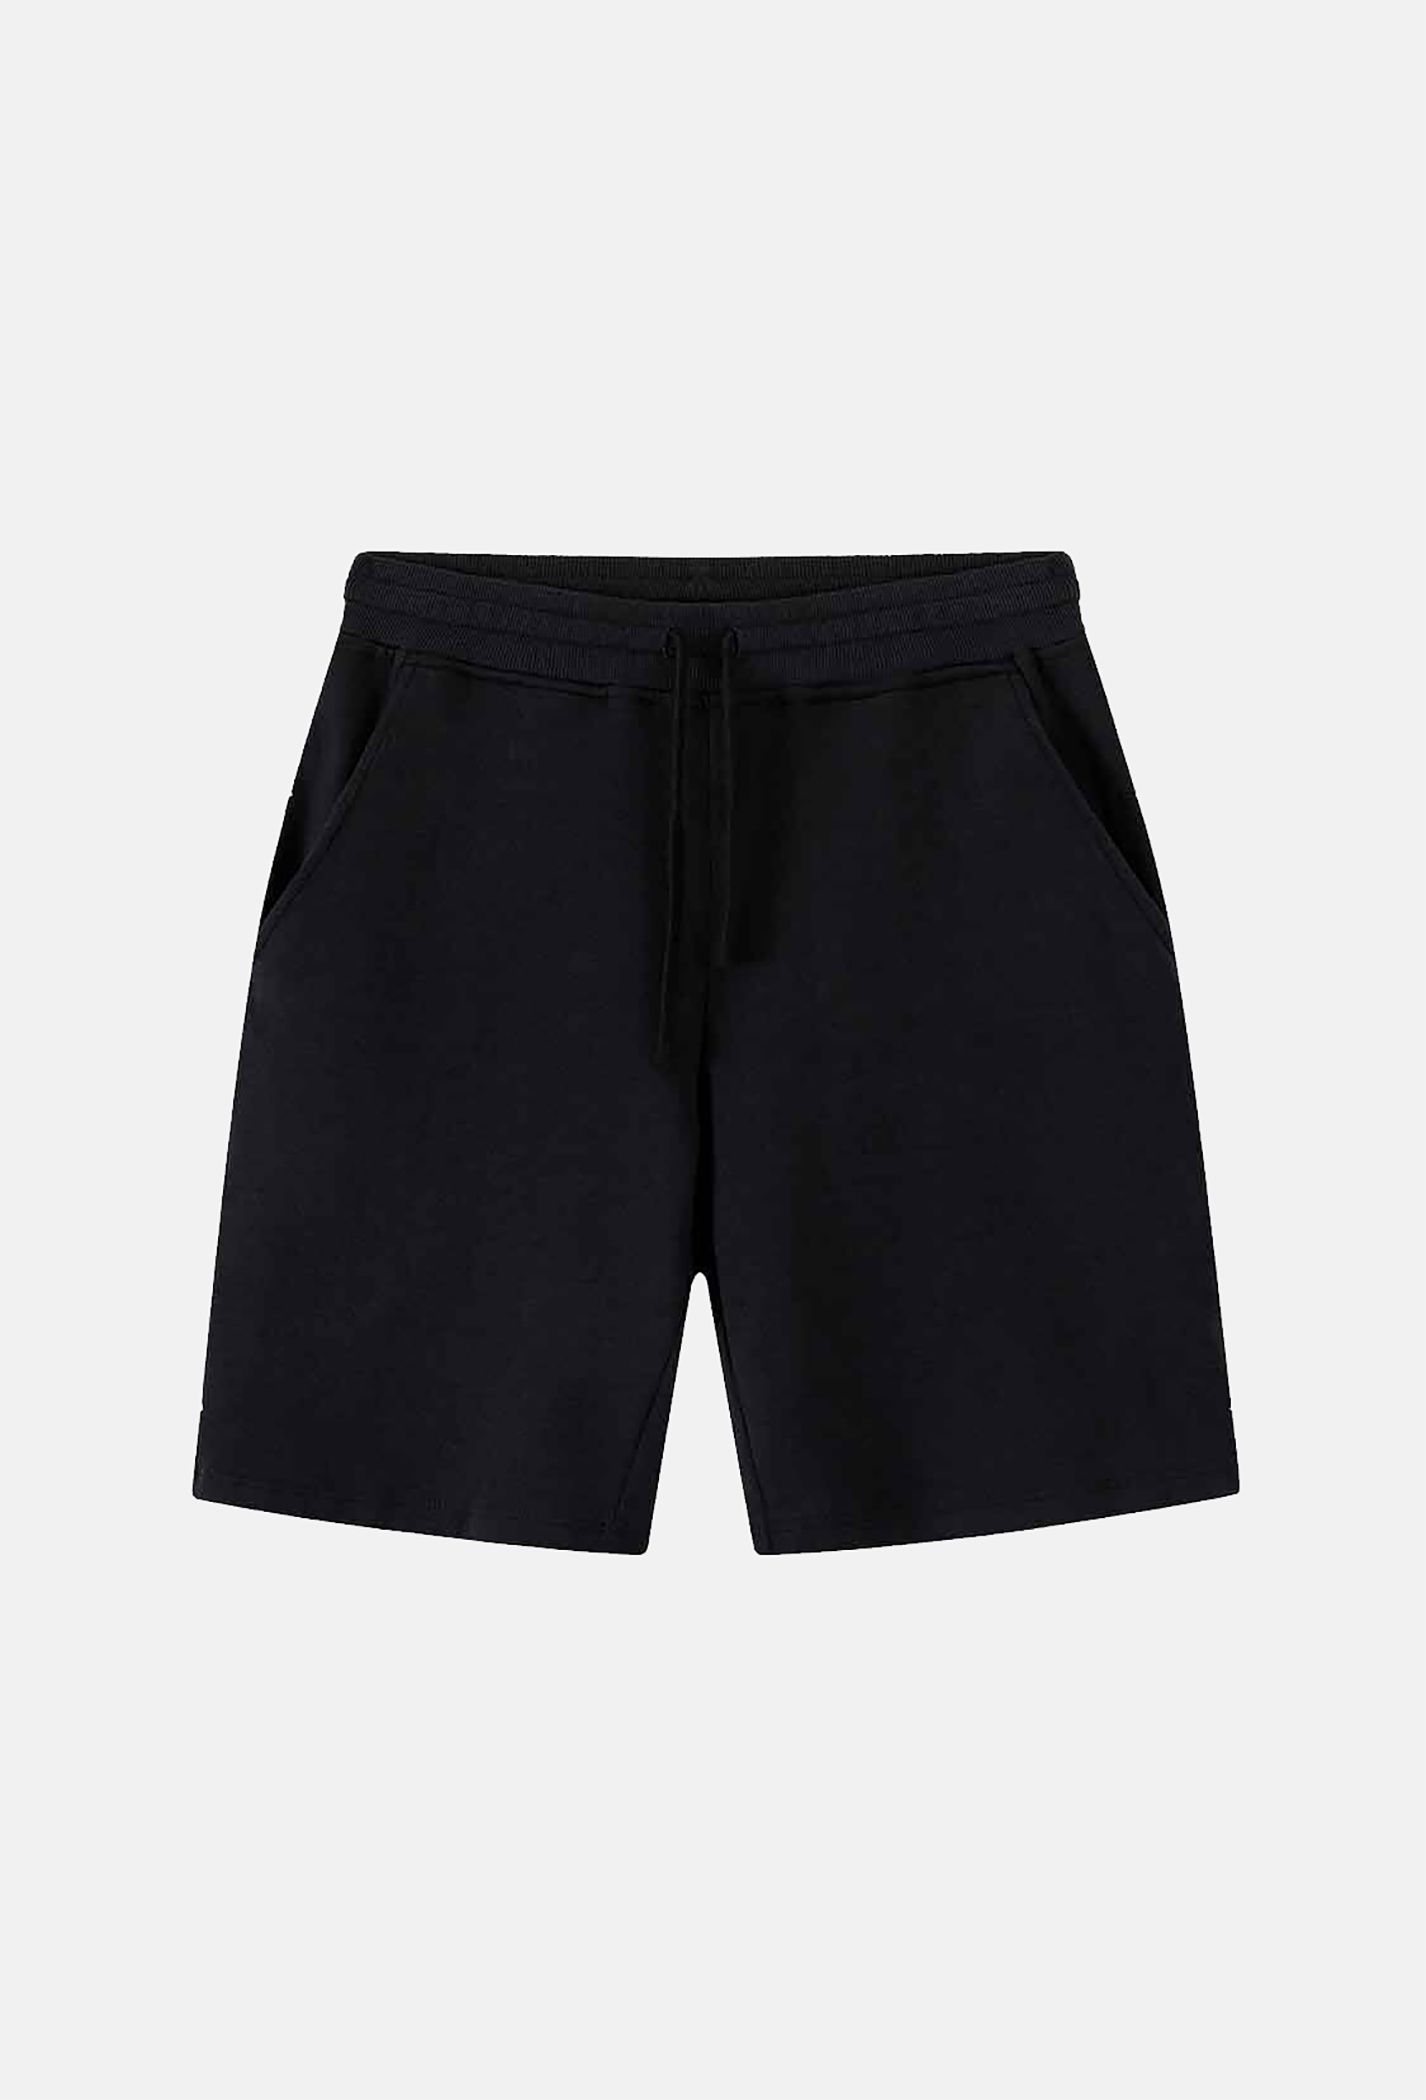 SĂN DEAL - Quần Shorts nam Easy Active màu đen (Form nhỏ) Đen 4